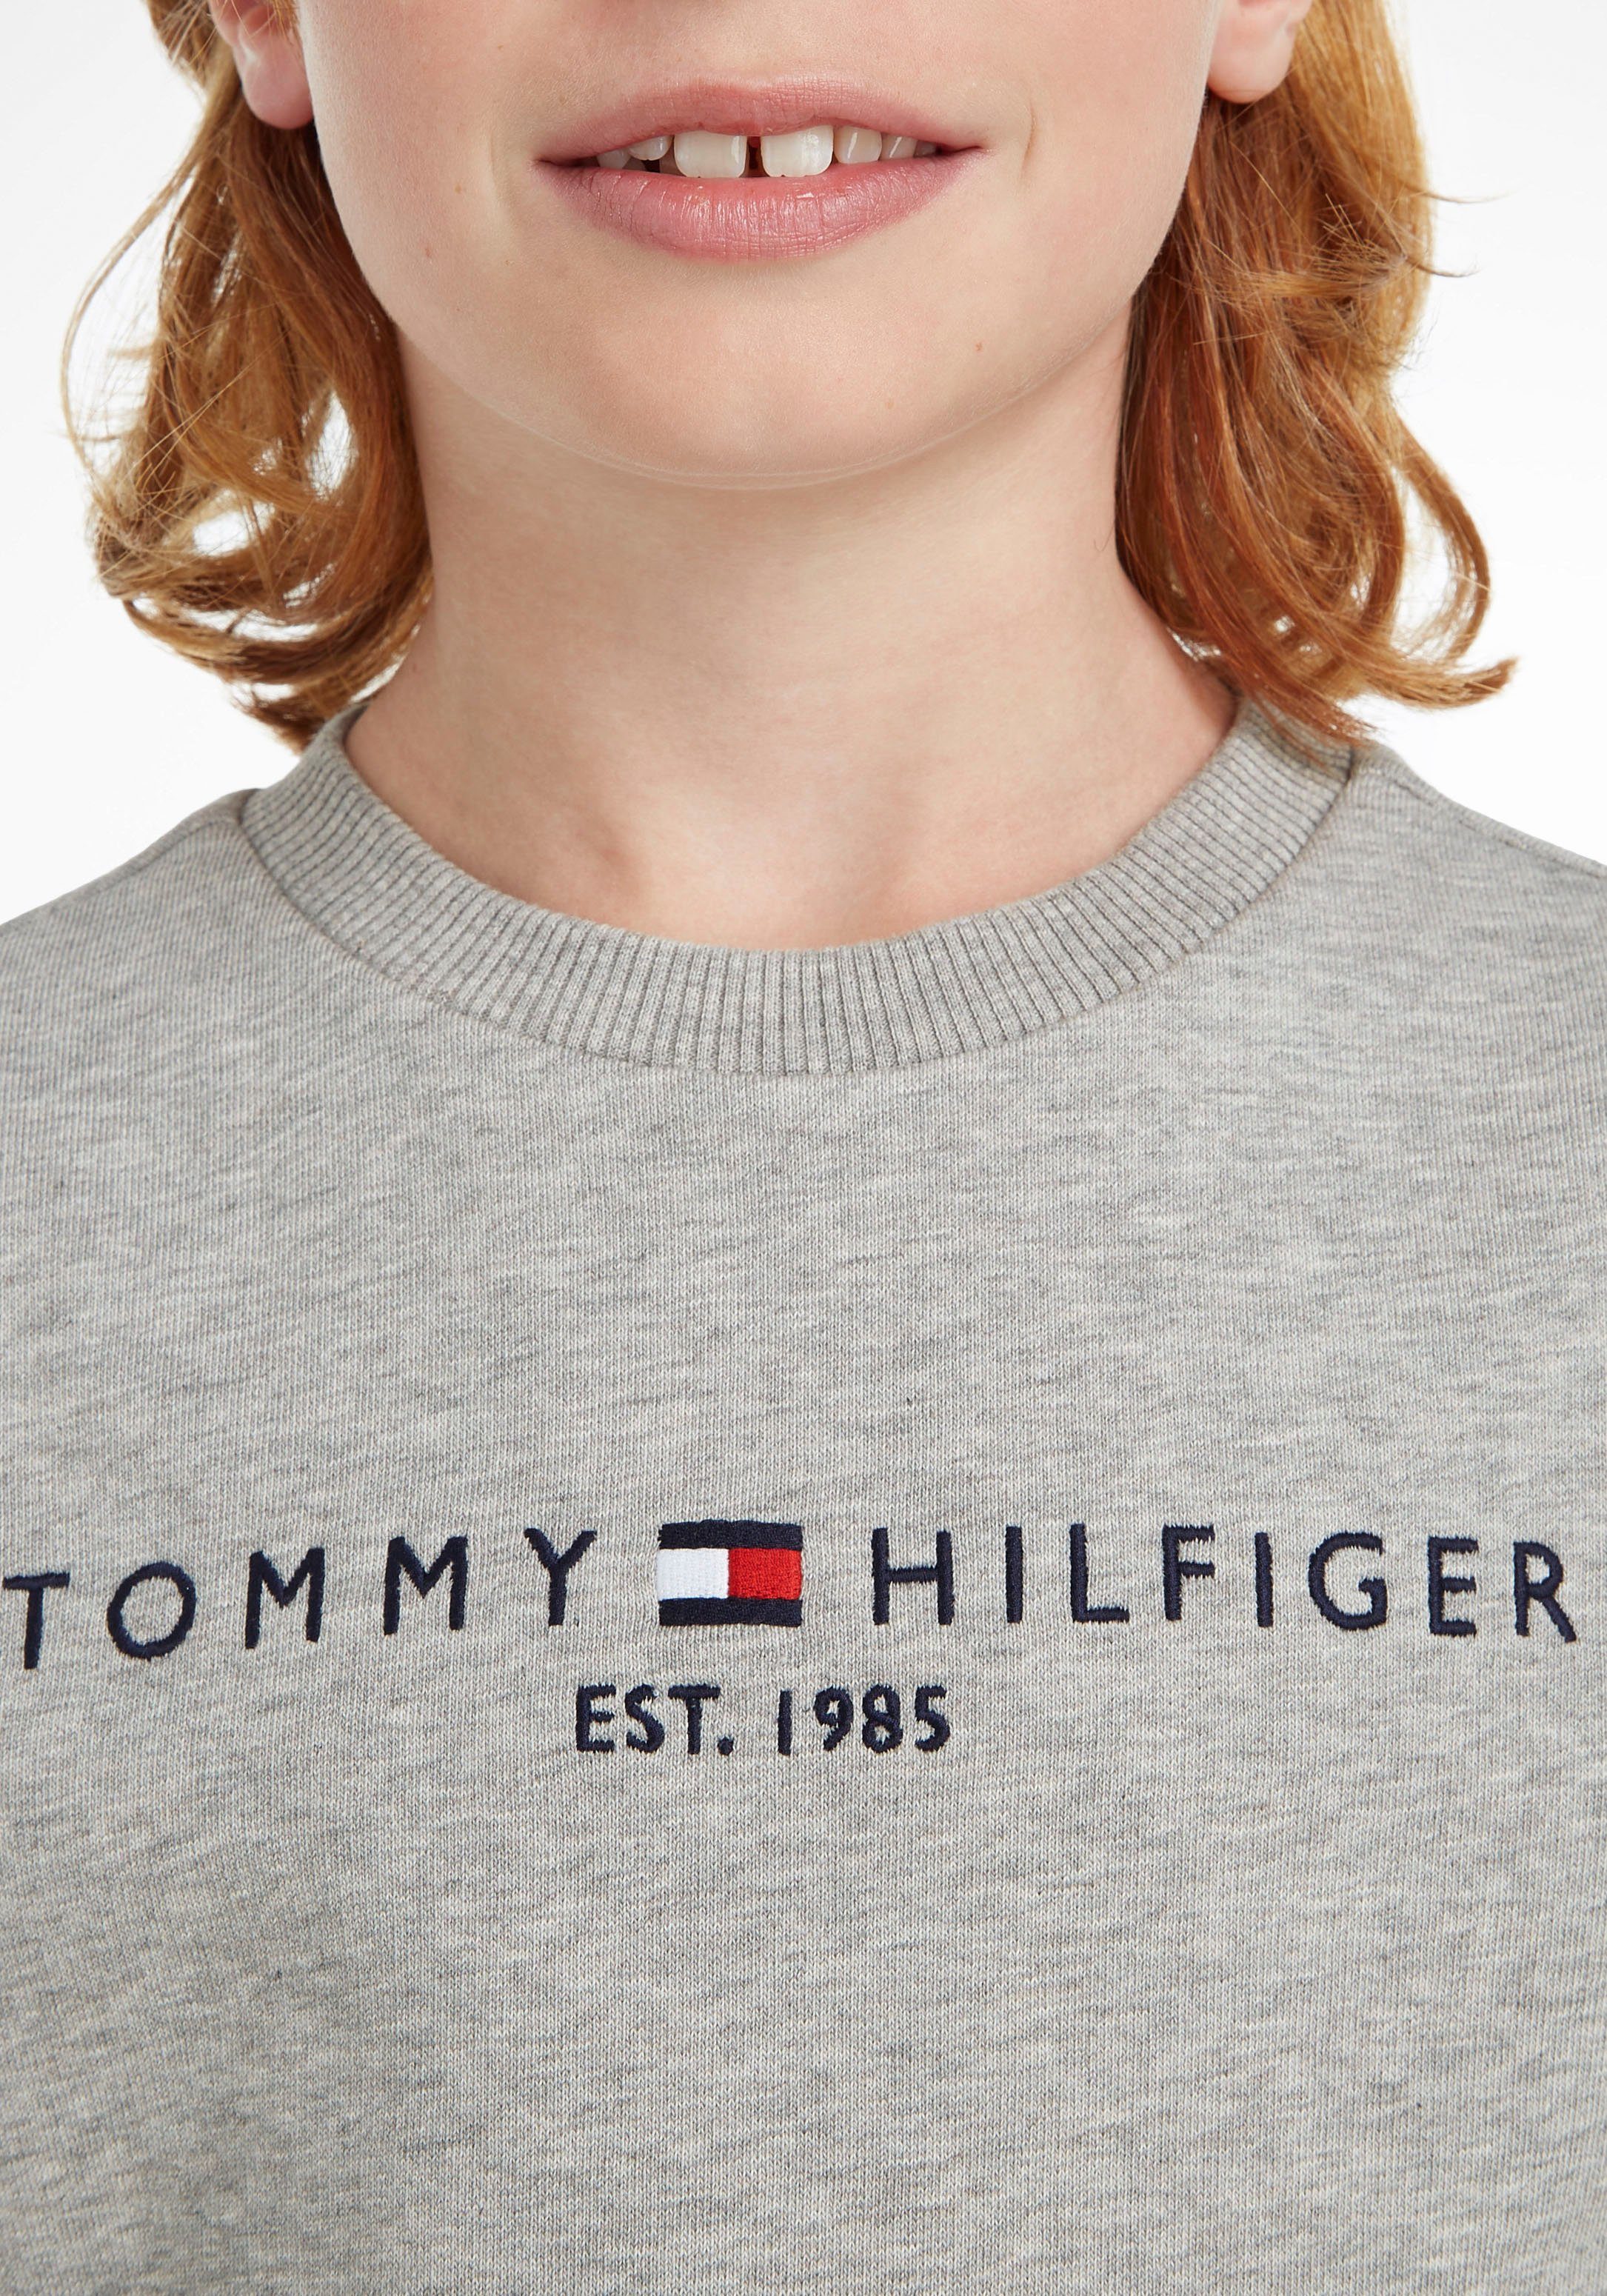 Tommy Hilfiger Sweatshirt Kids Kinder MiniMe,für und ESSENTIAL SWEATSHIRT Mädchen Junior Jungen